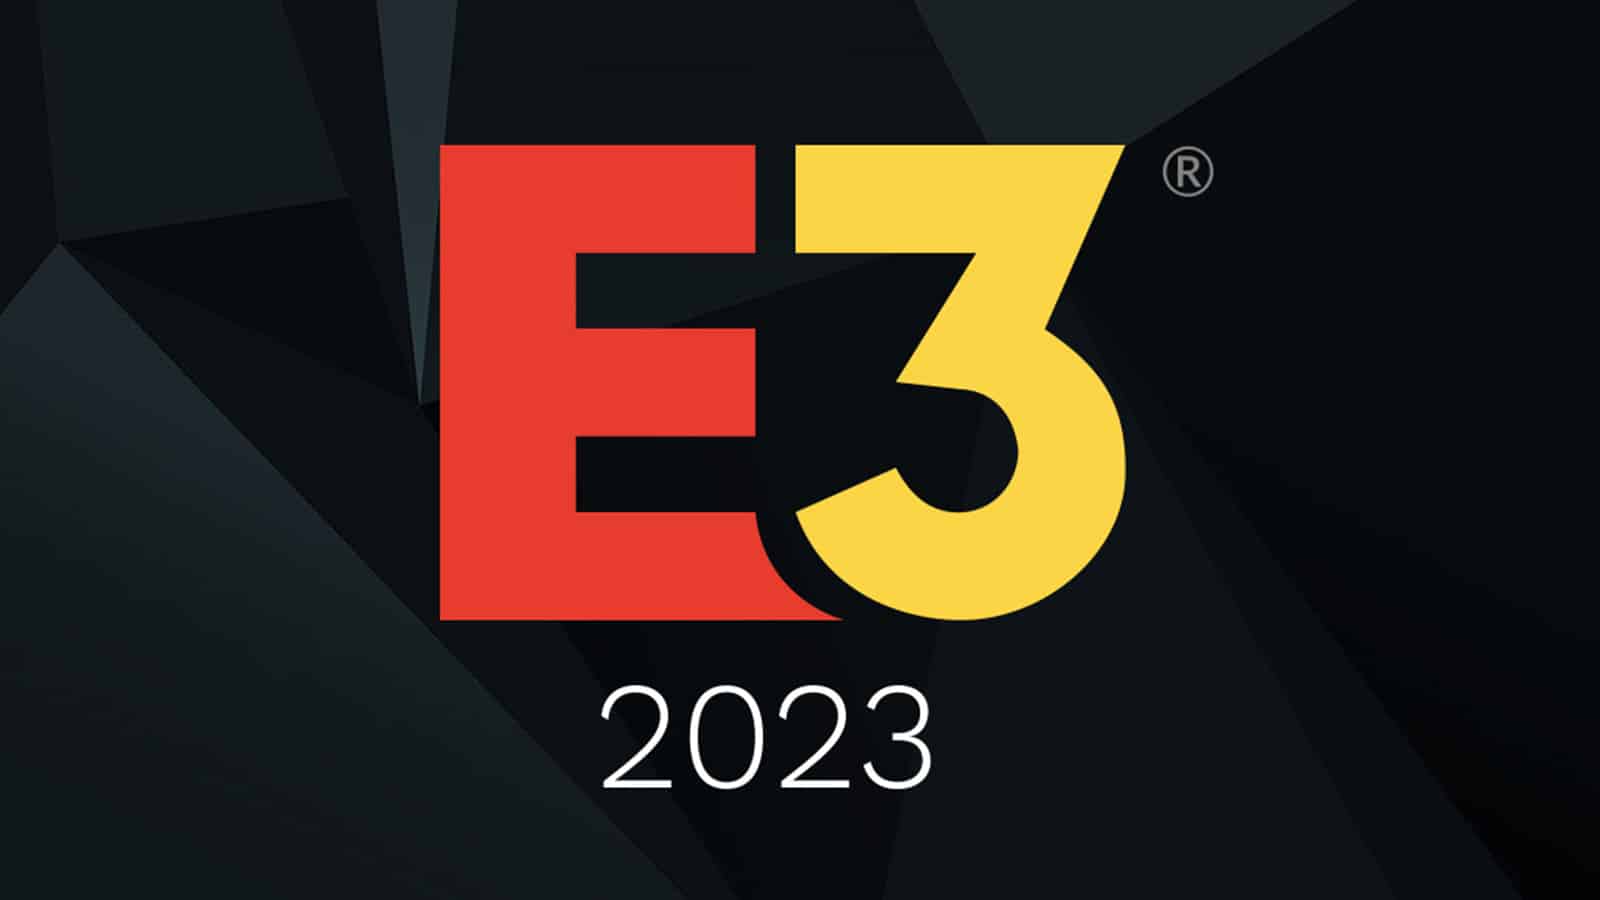 The E3 2023 logo